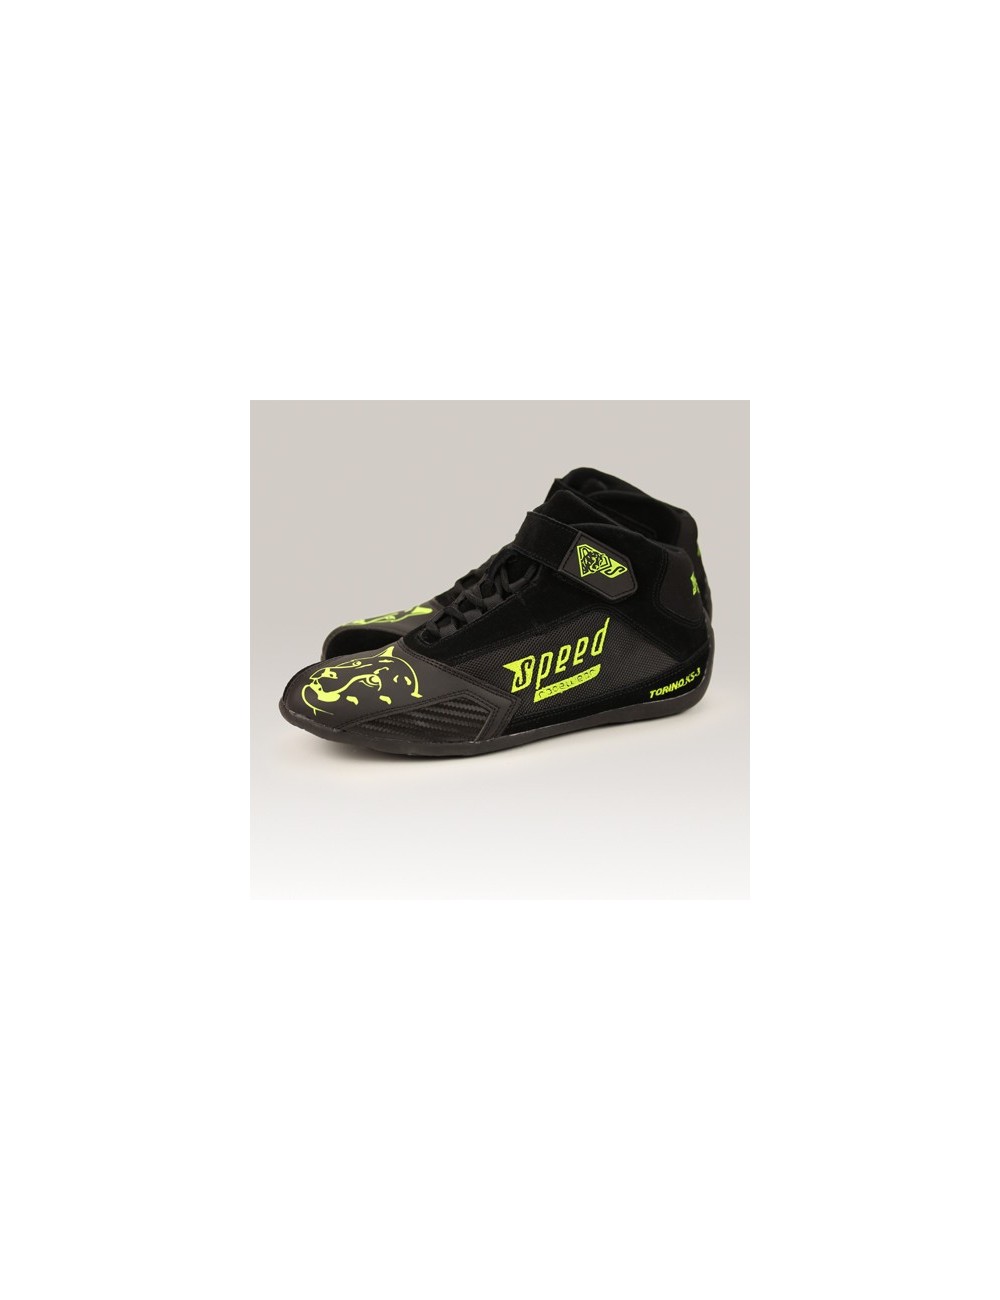 SPEED zapatos Torino KS-3 negro / amarillo-neón tamaño